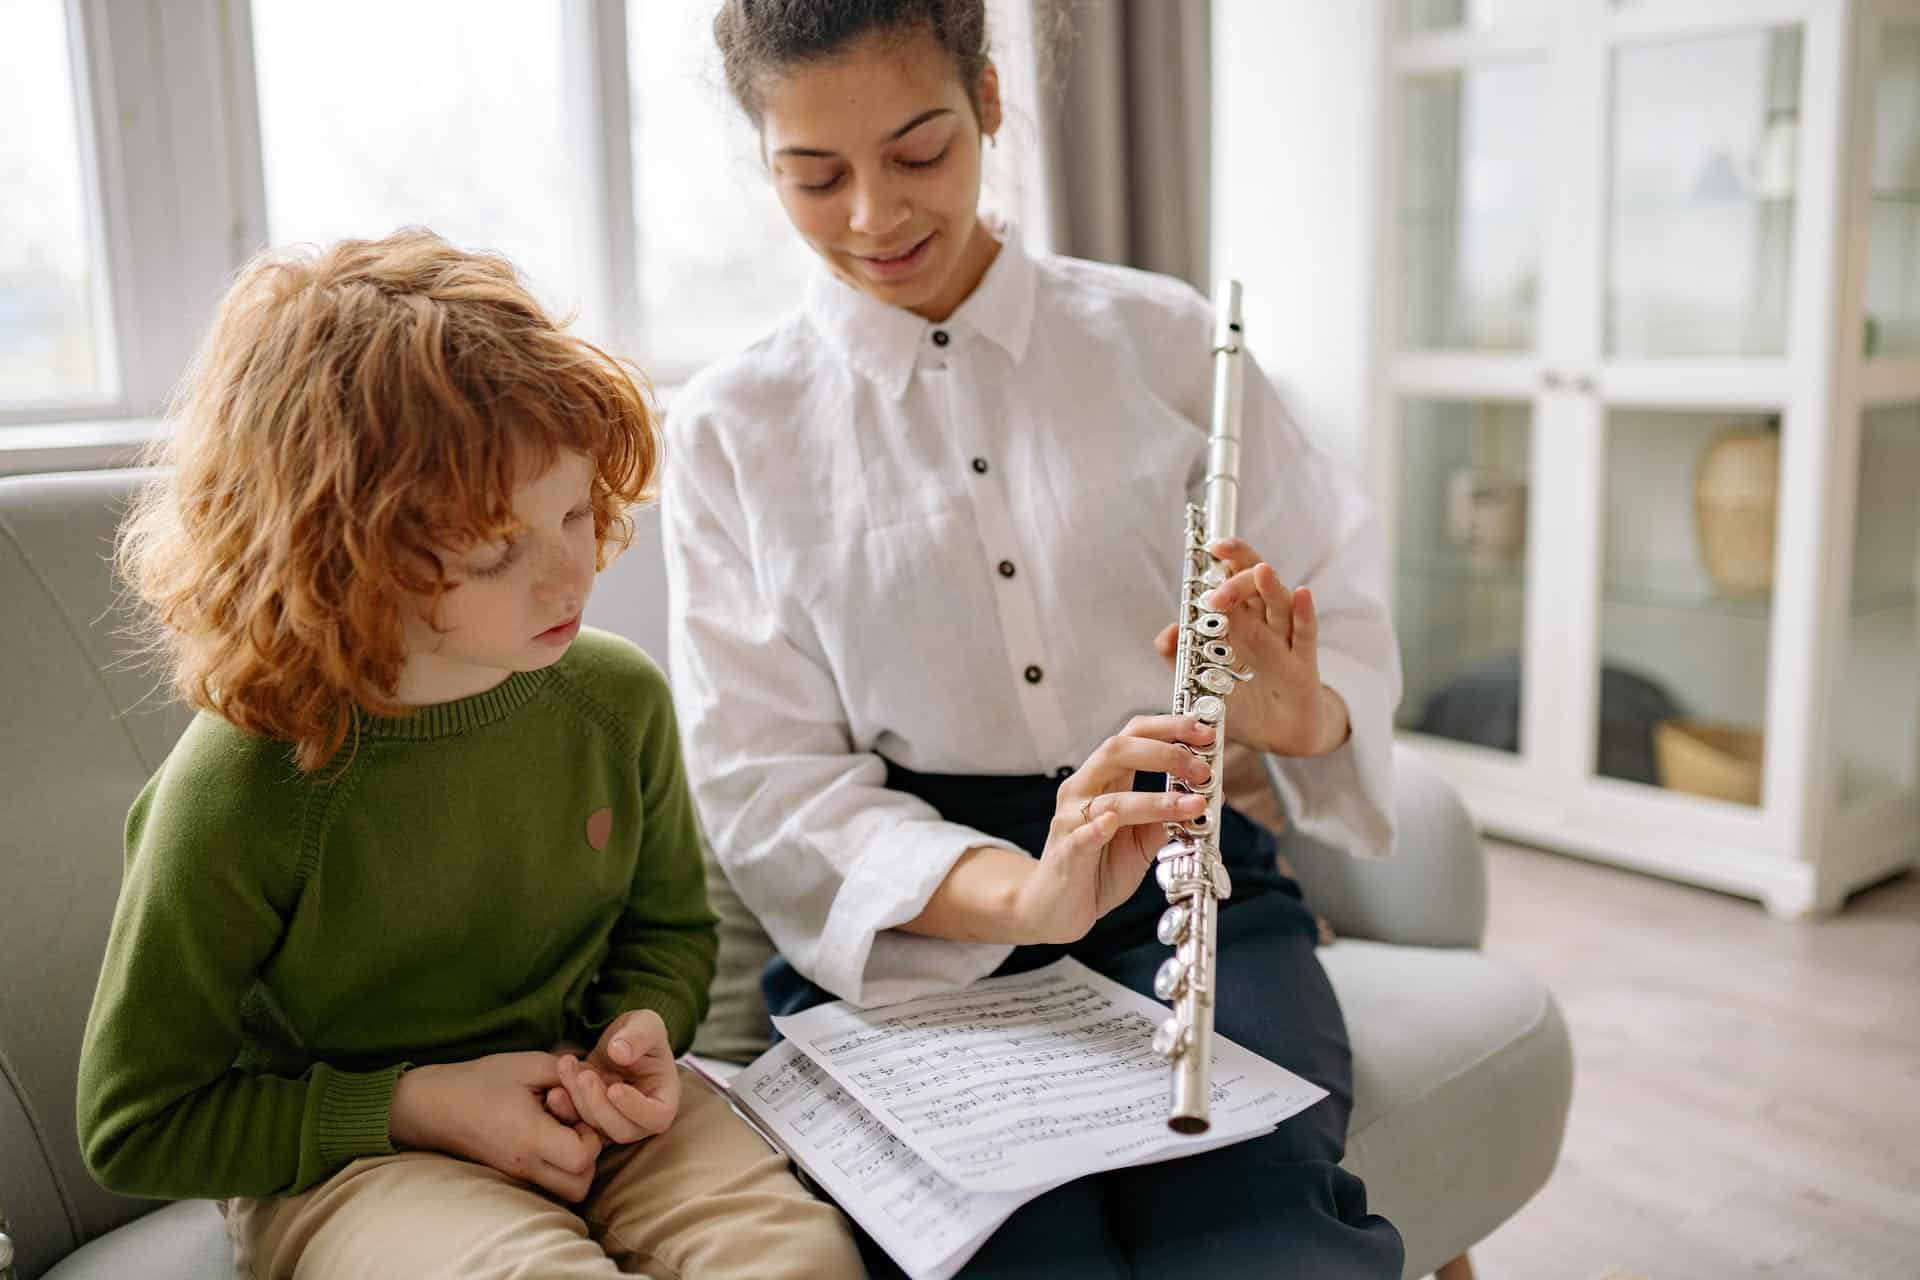 Vrouw leert muziekinstrument spelen aan kind